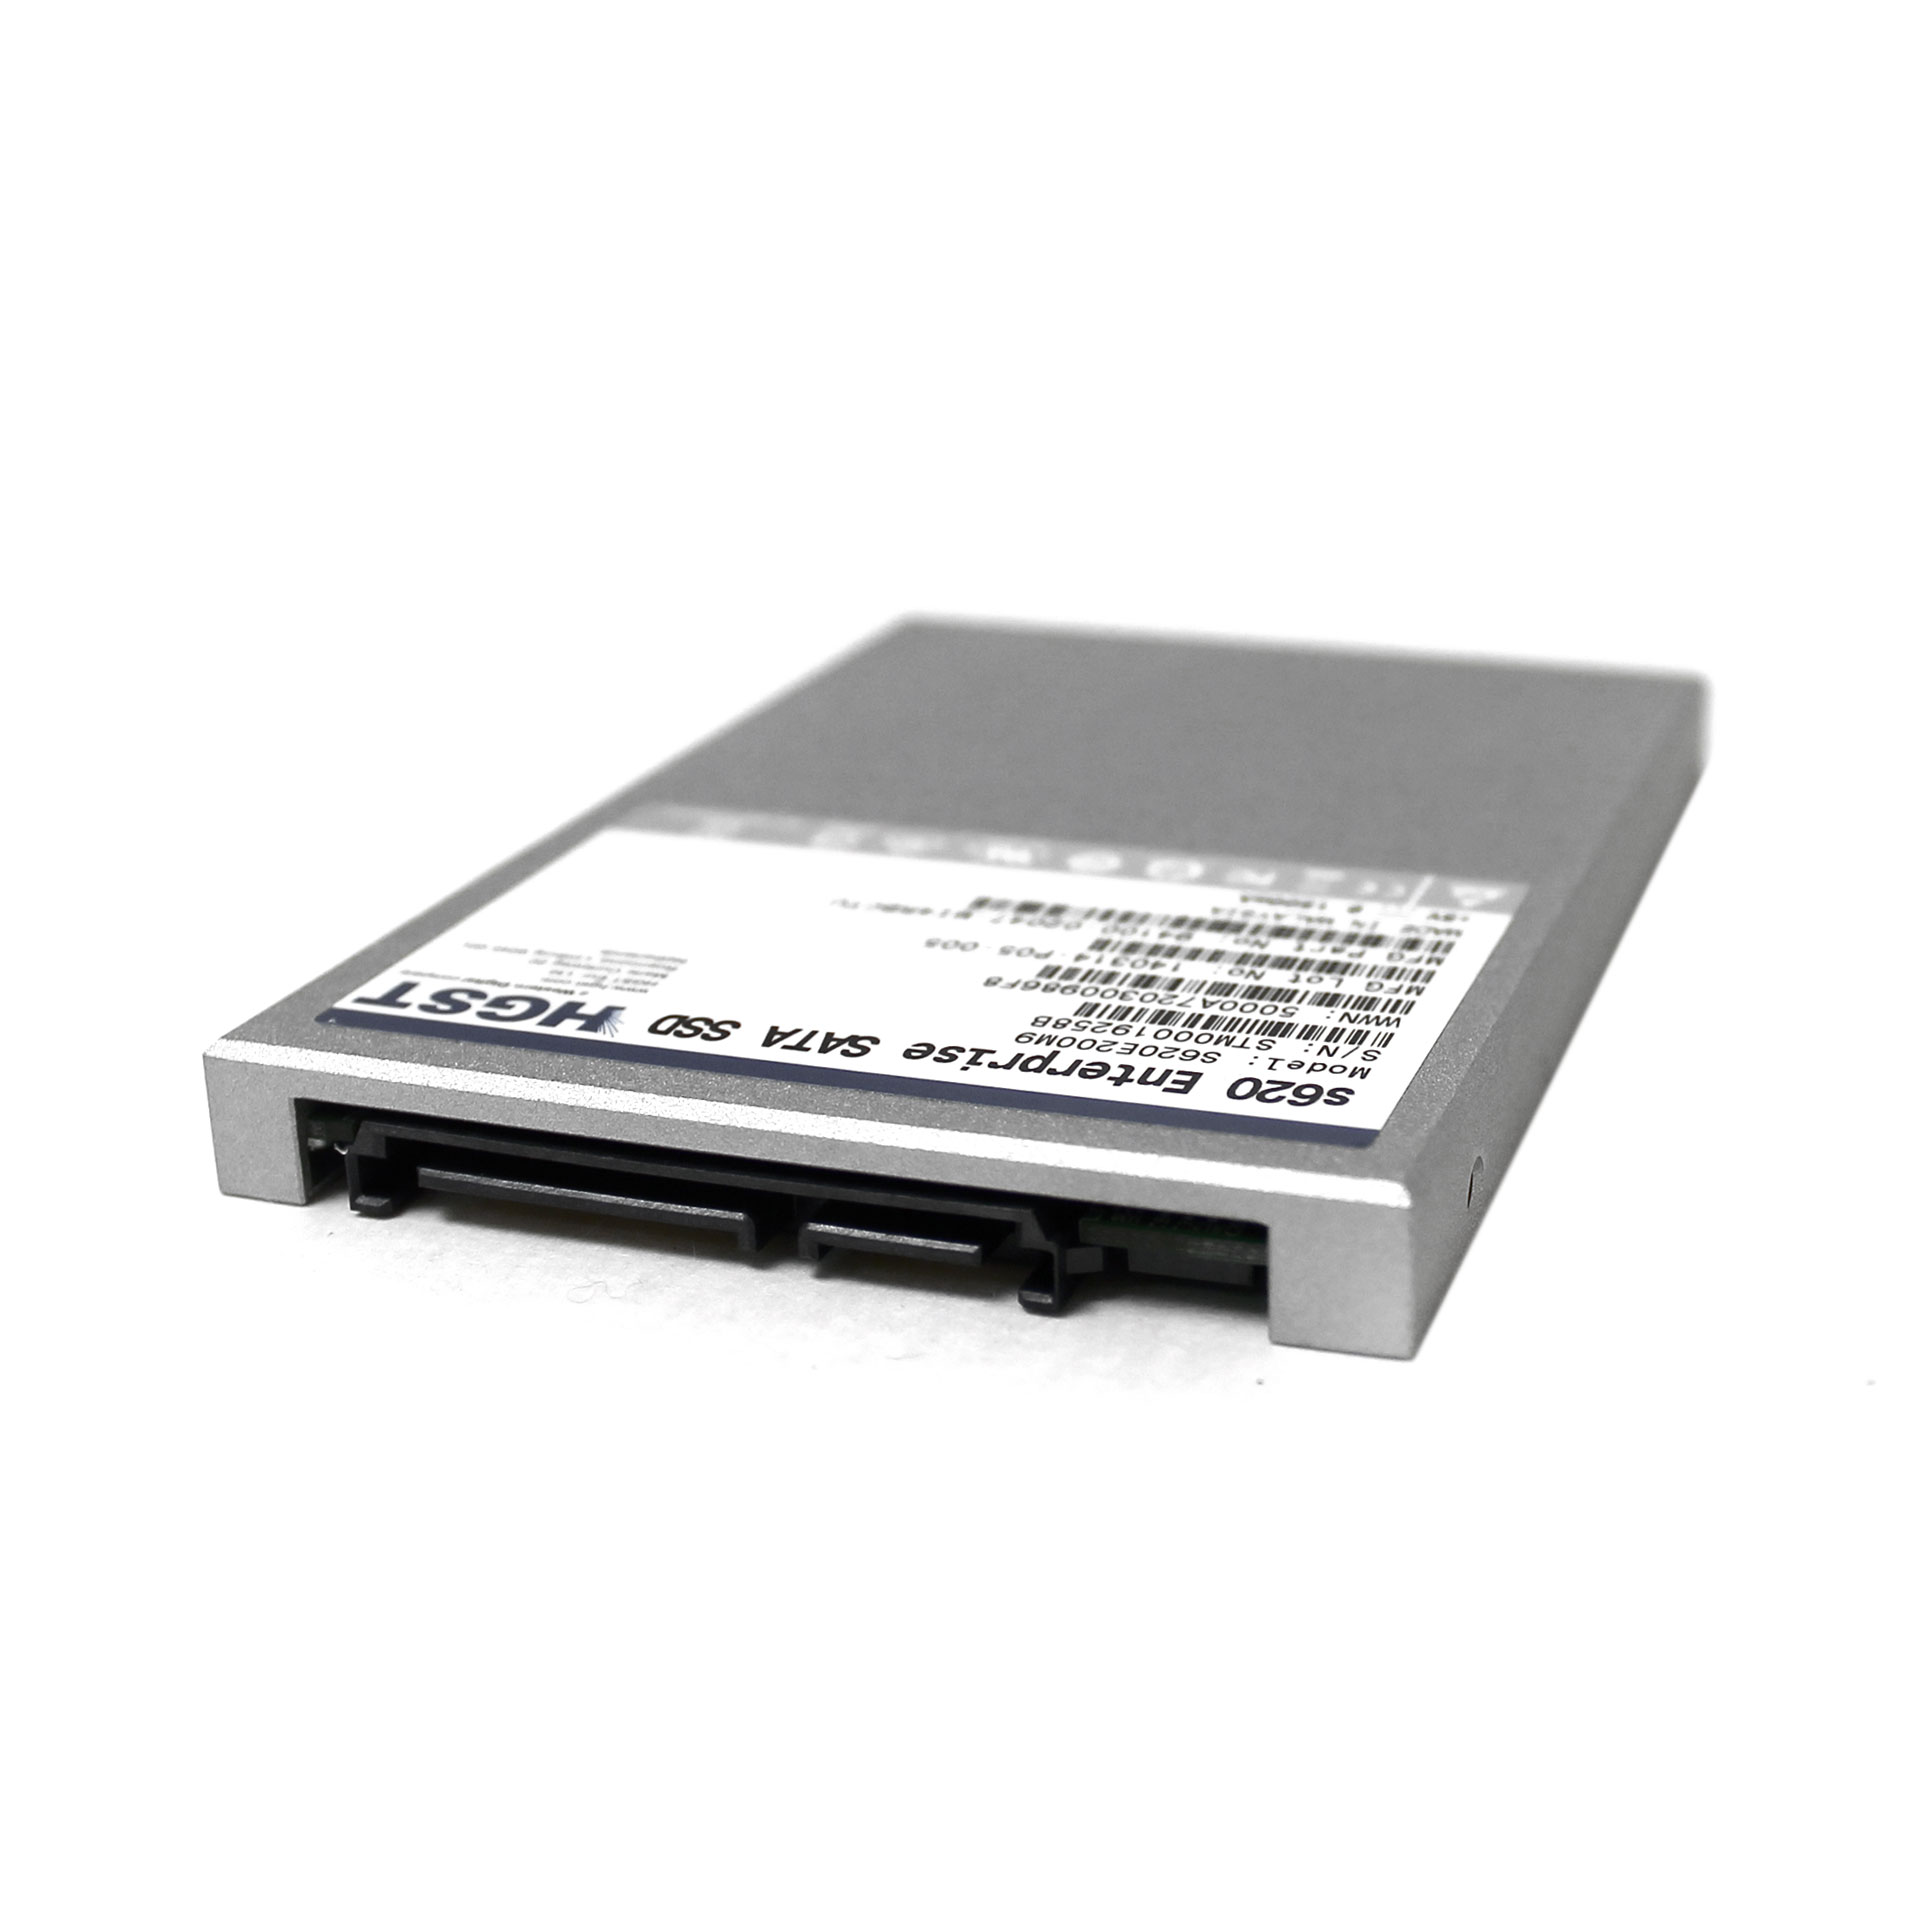 HGST WD 200GB M16 SATA 2.5" SSD S620E200M9 94100-02047-MI4RBCTU - Click Image to Close